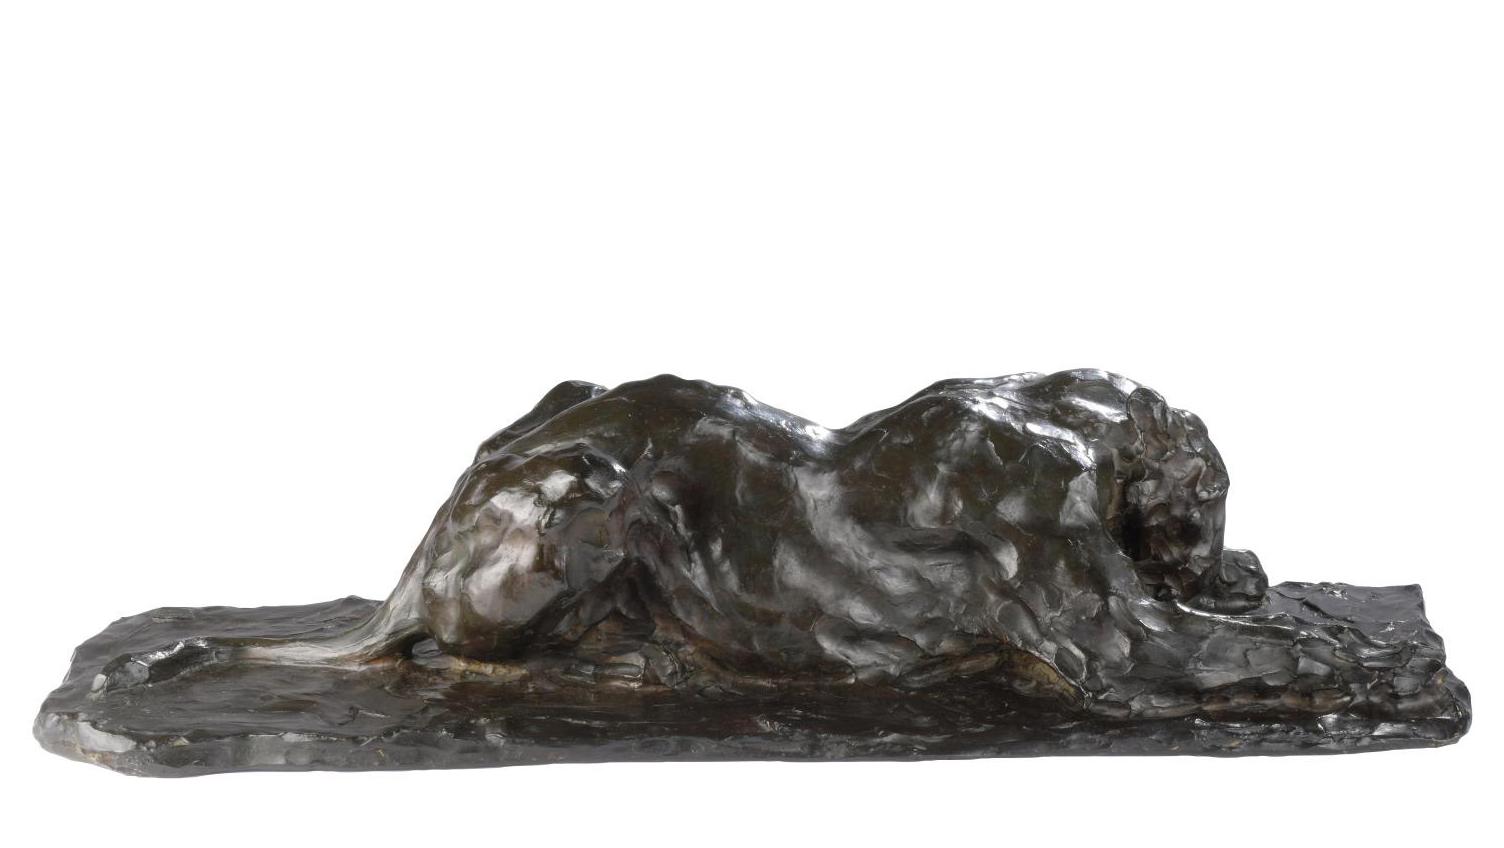 Rembrandt Bugatti (1884-1916), Lionne dévorant (Devouring Lioness), bronze with brown... Rembrandt Bugatti’s Hungry Lioness